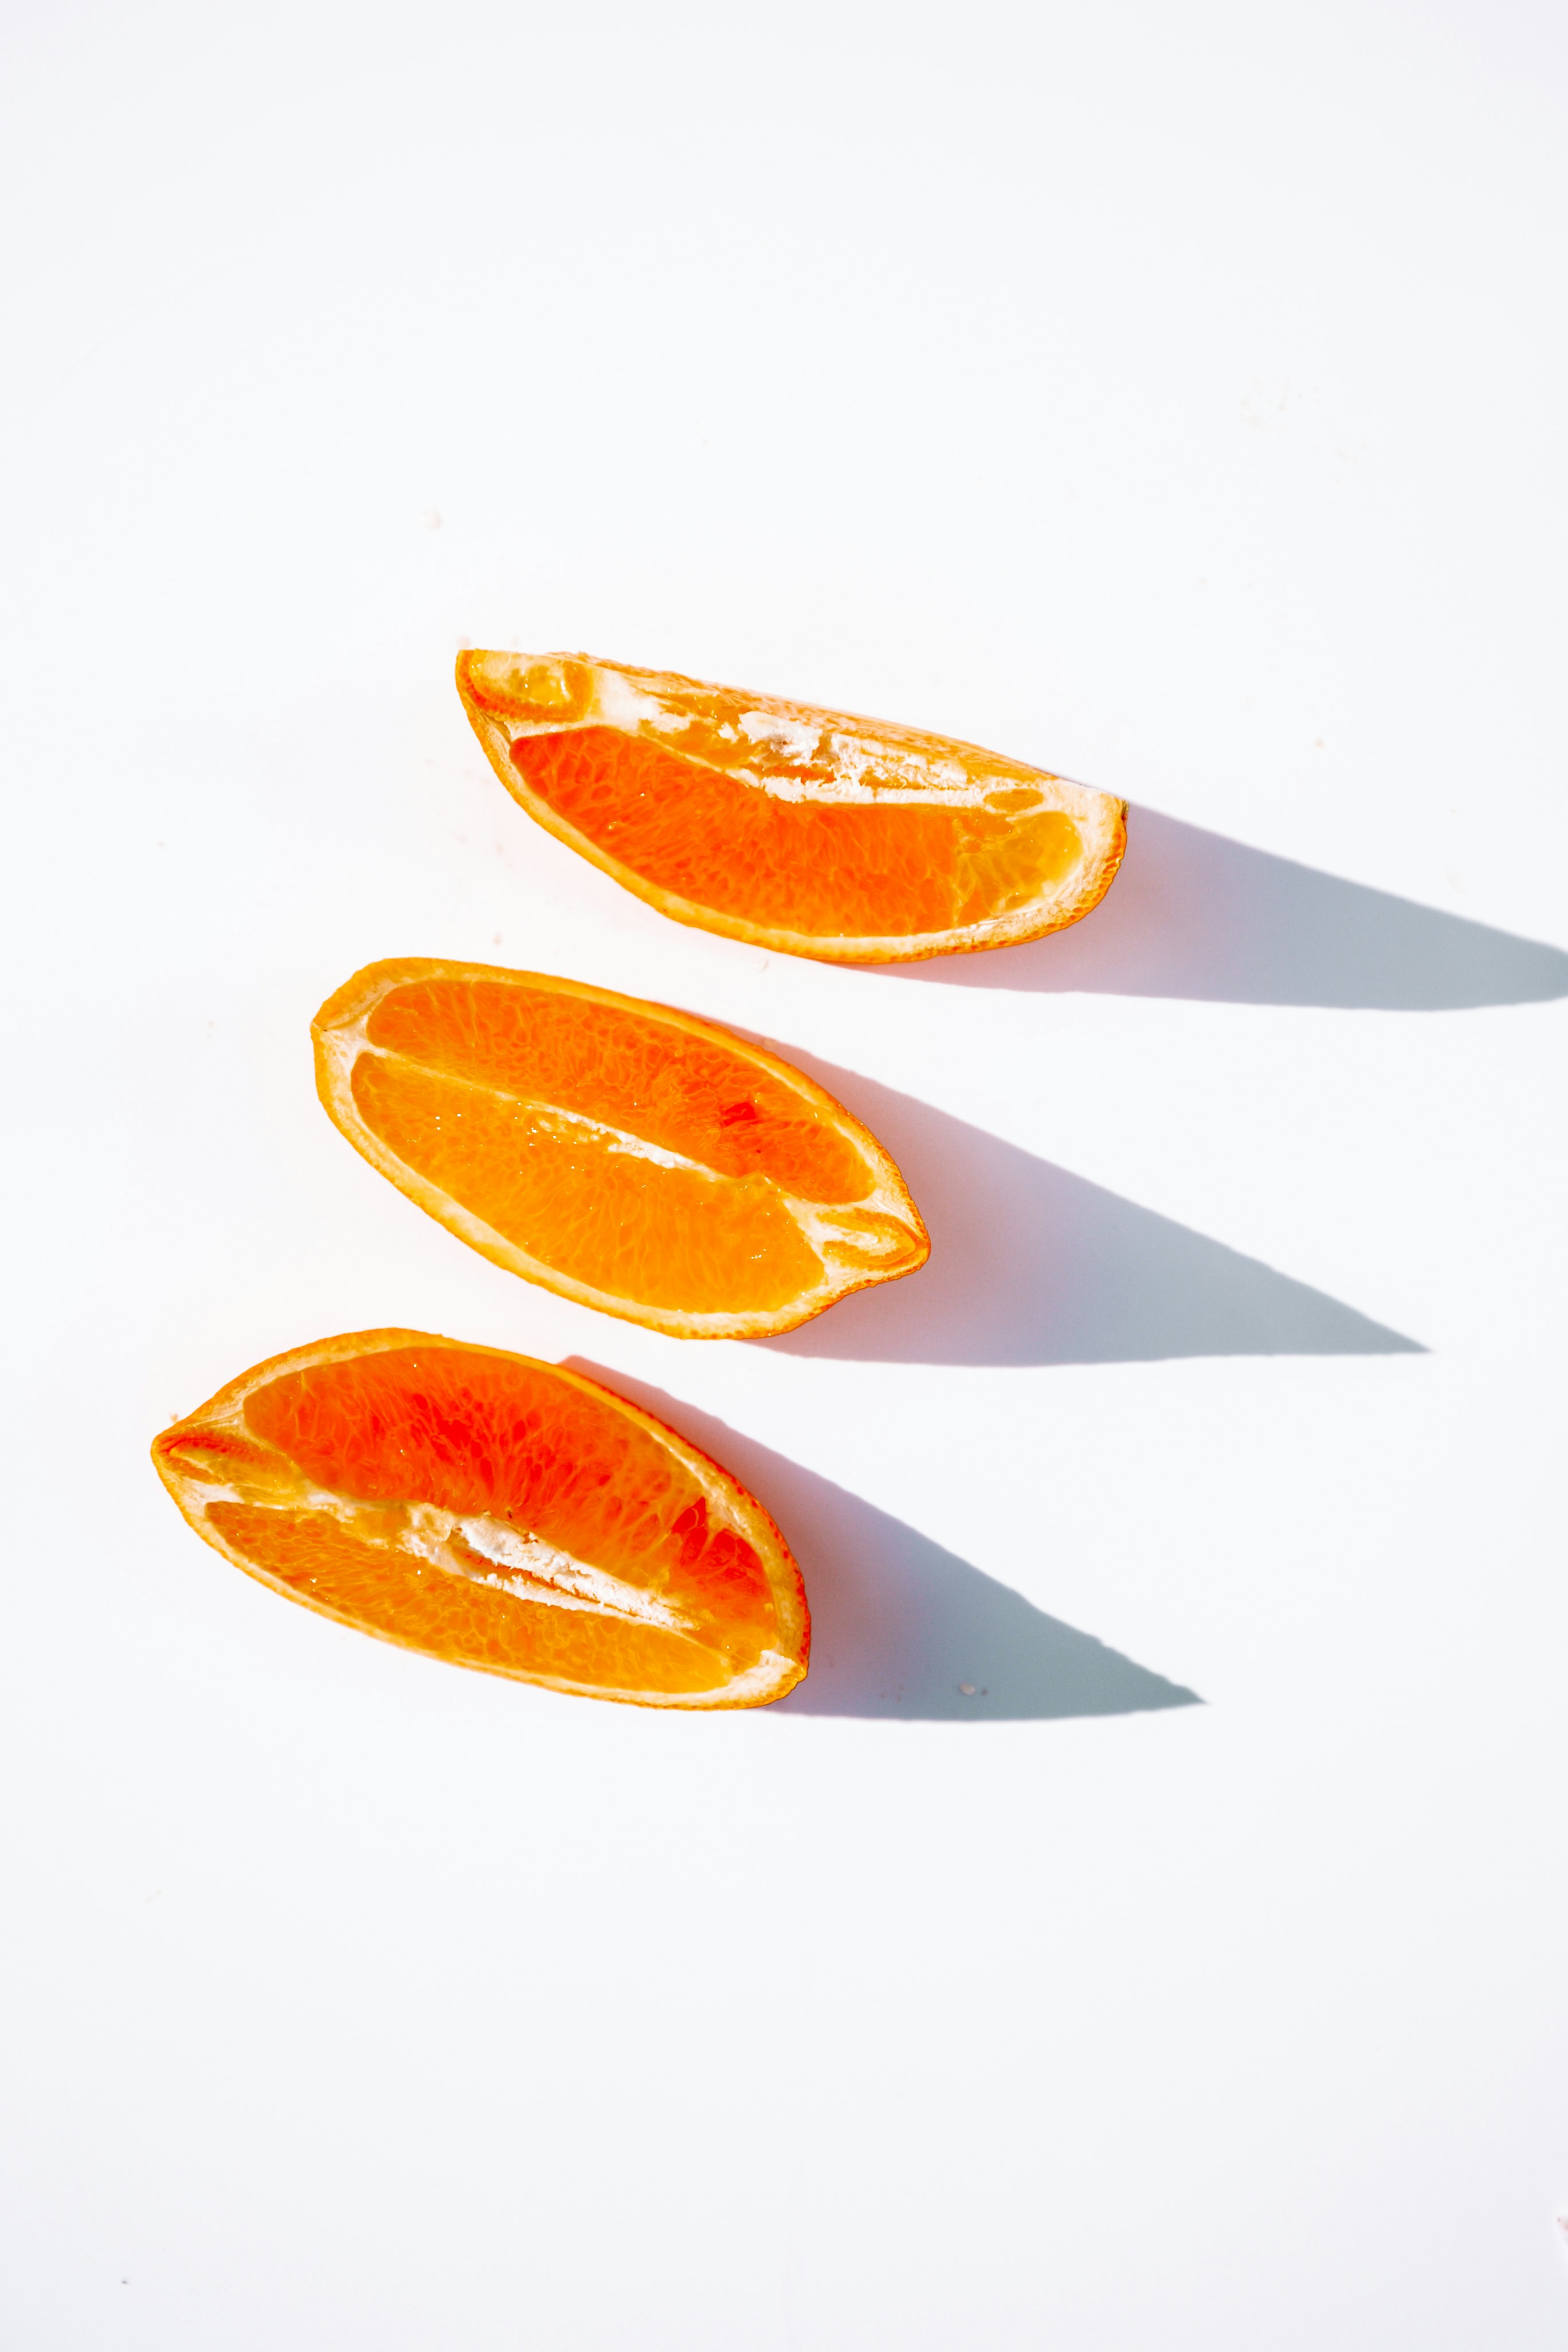 sliced orange fruit on white plate